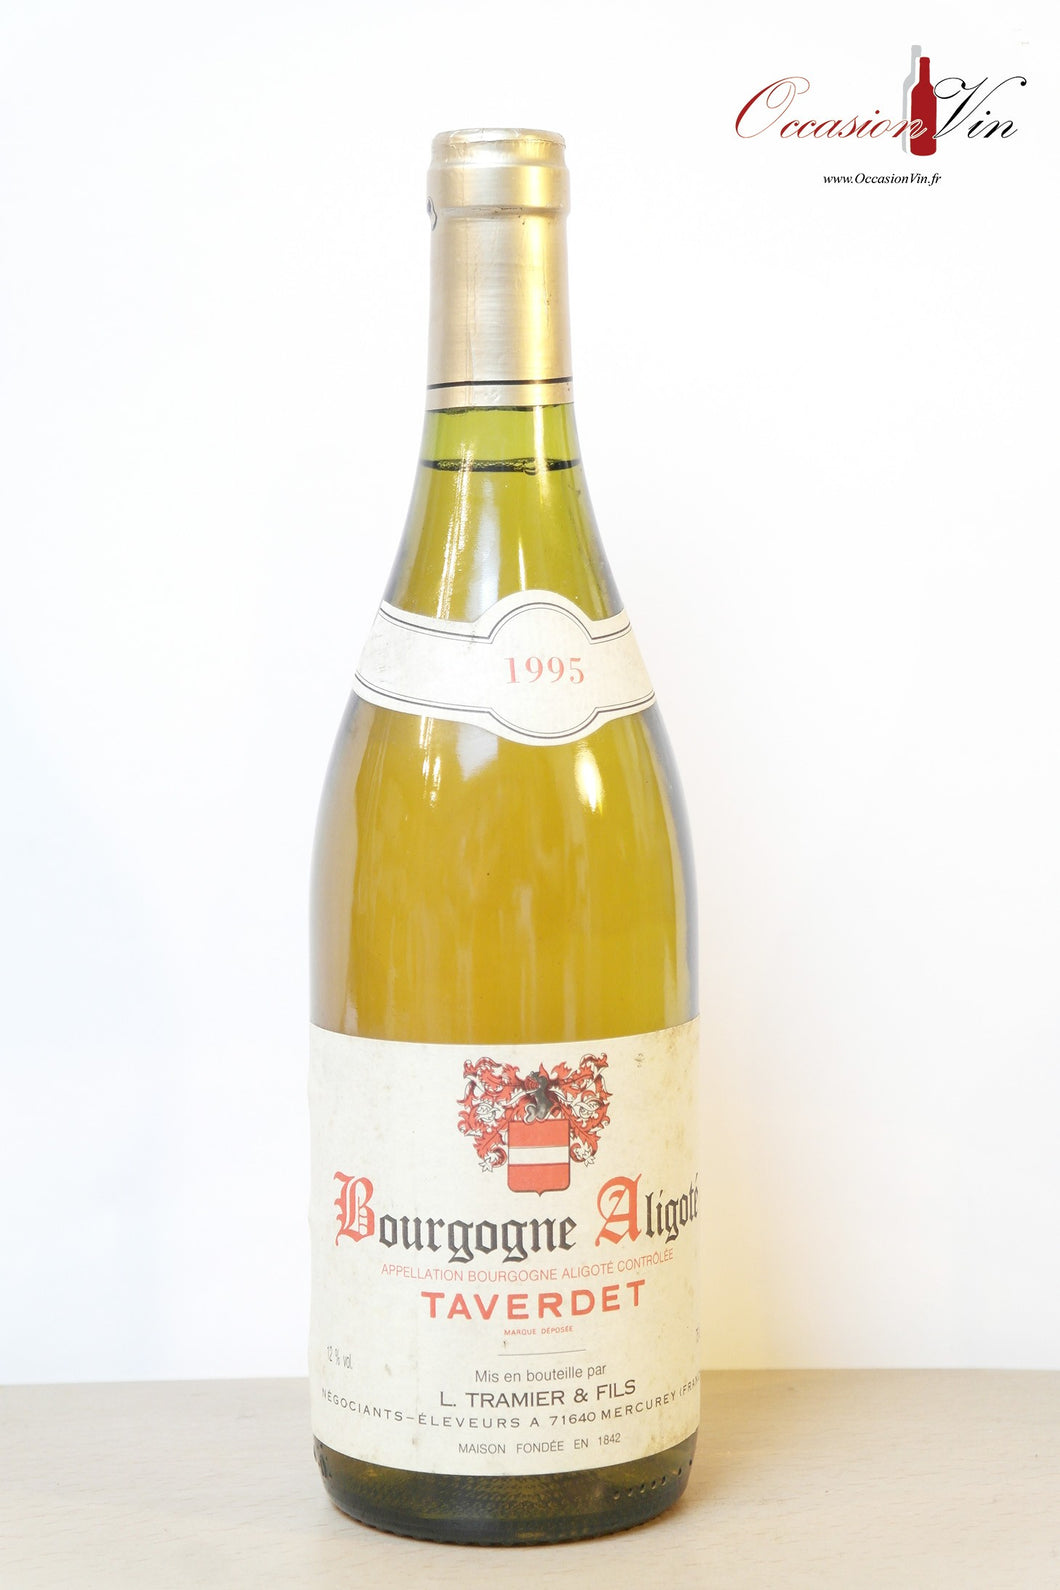 Bourgogne Aligoté Taverdet Vin 1995